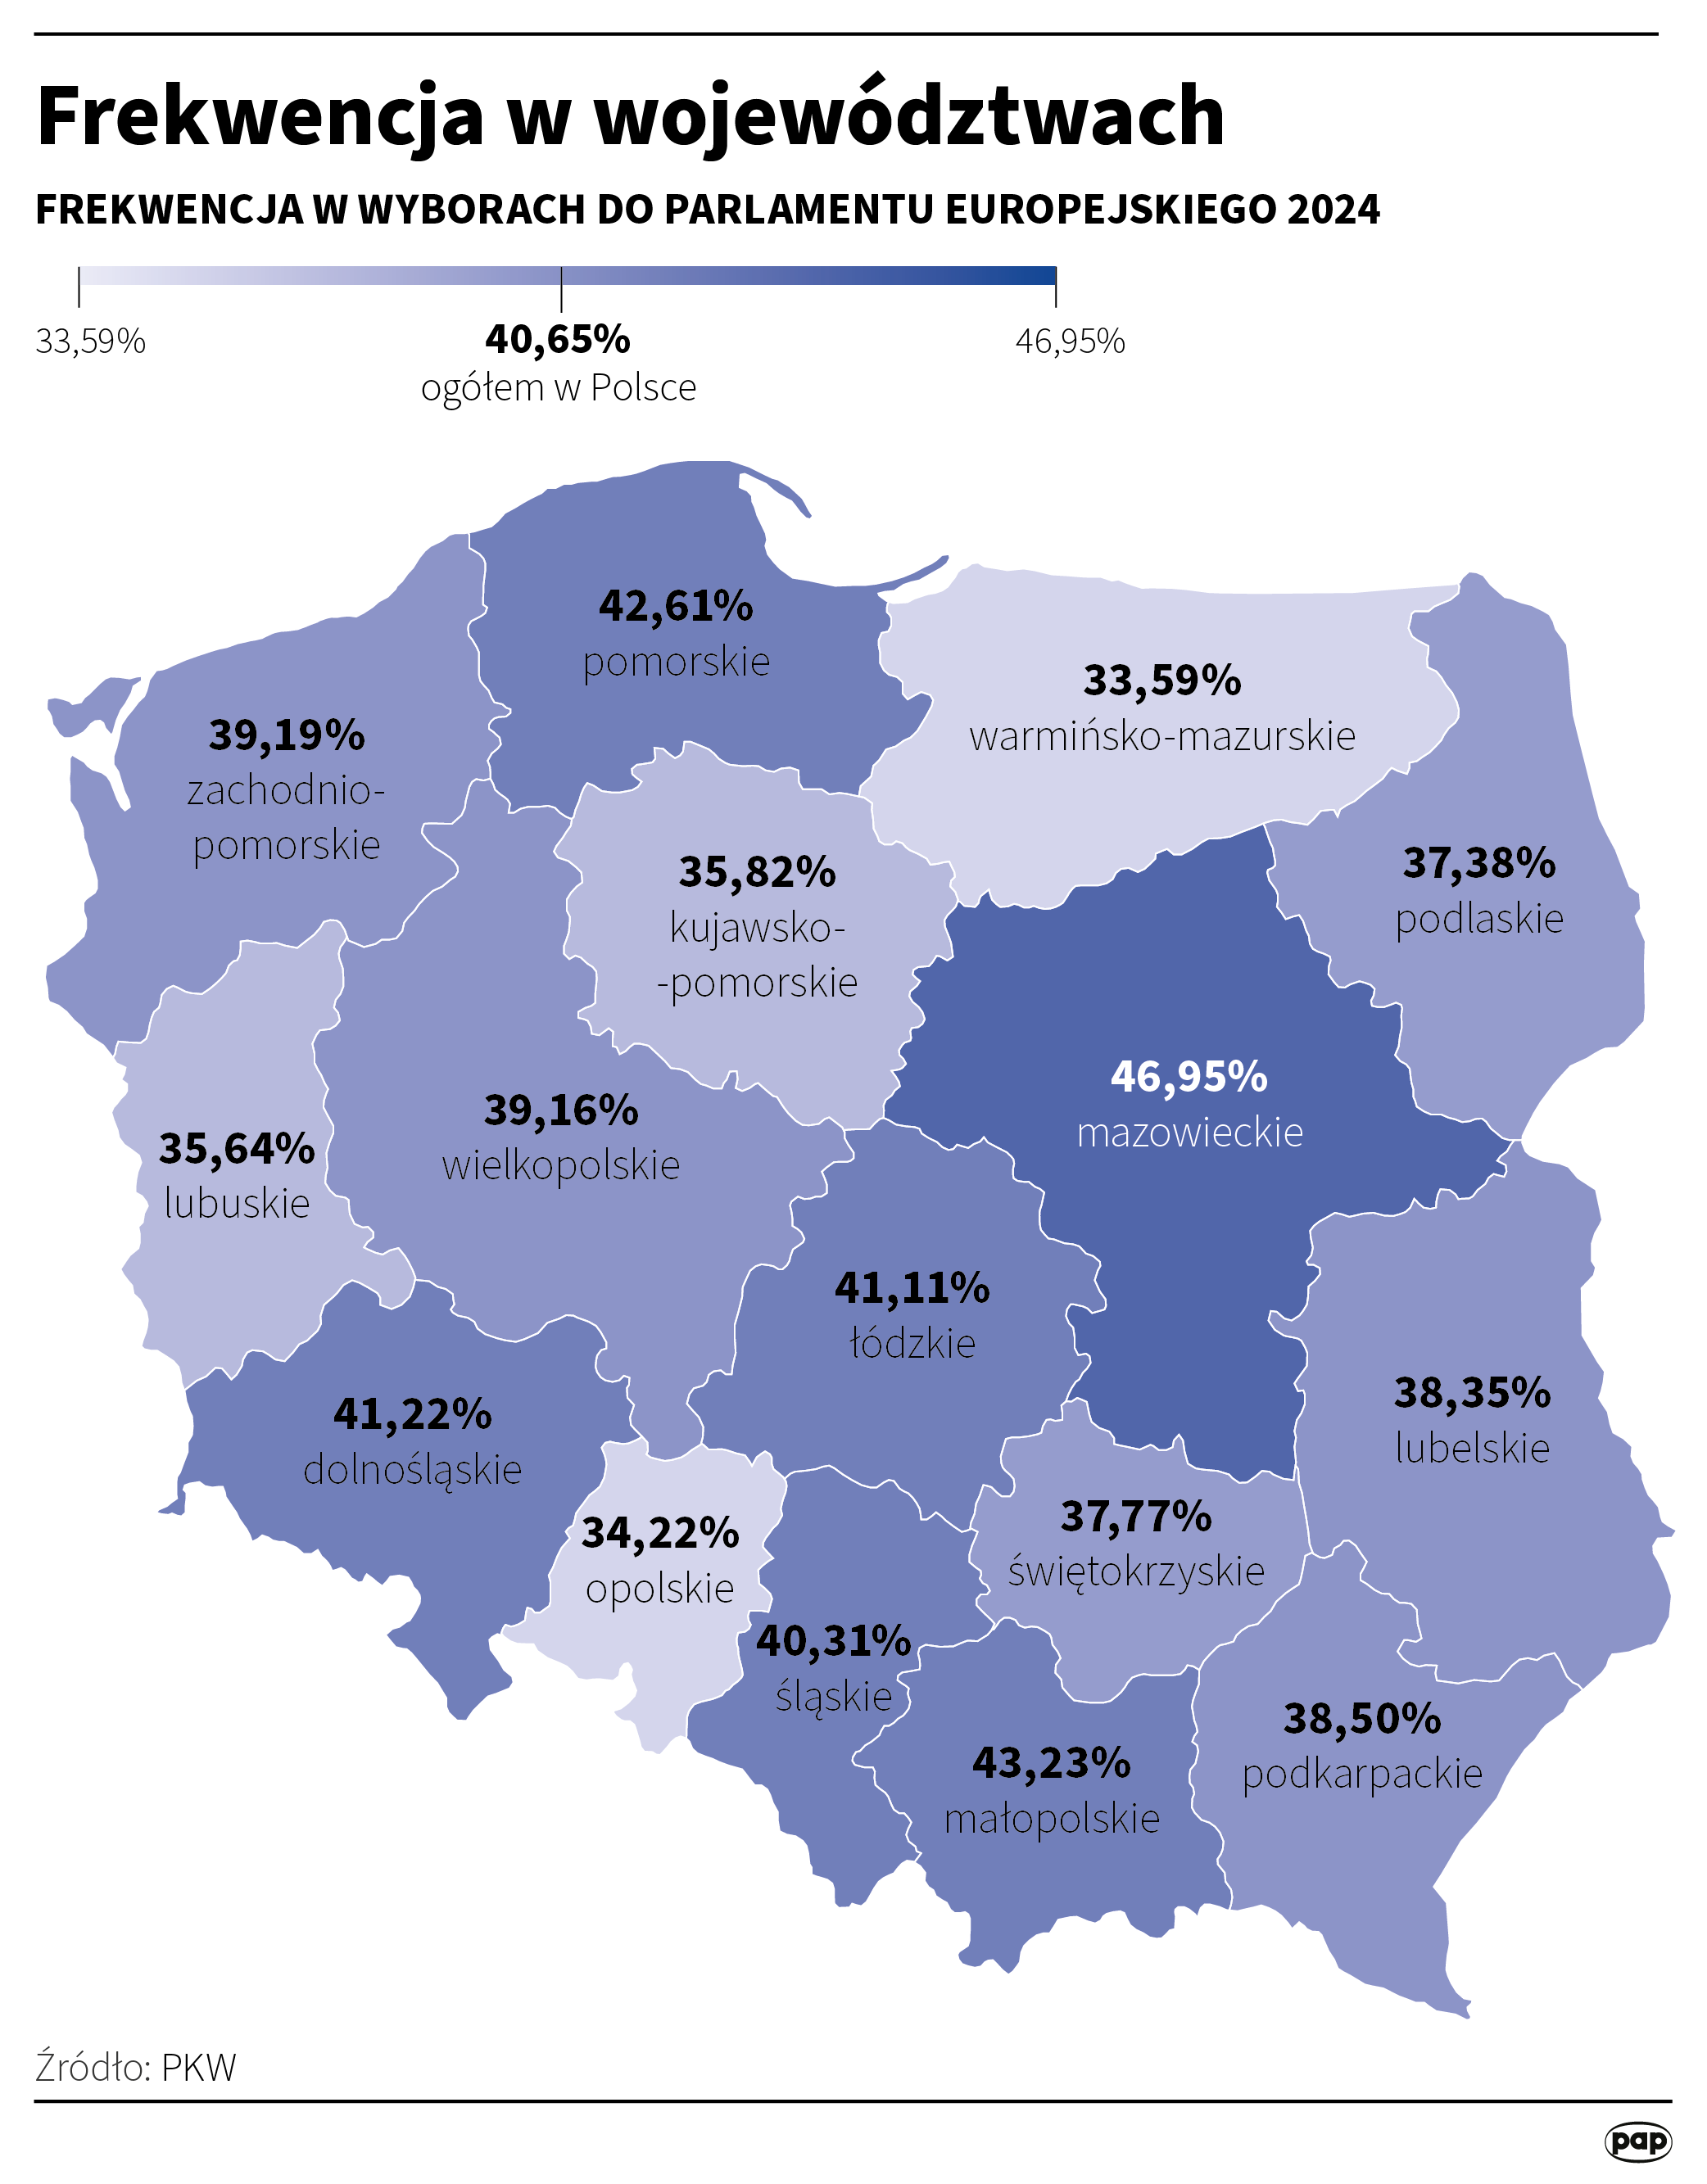 Frekwencja w Polsce